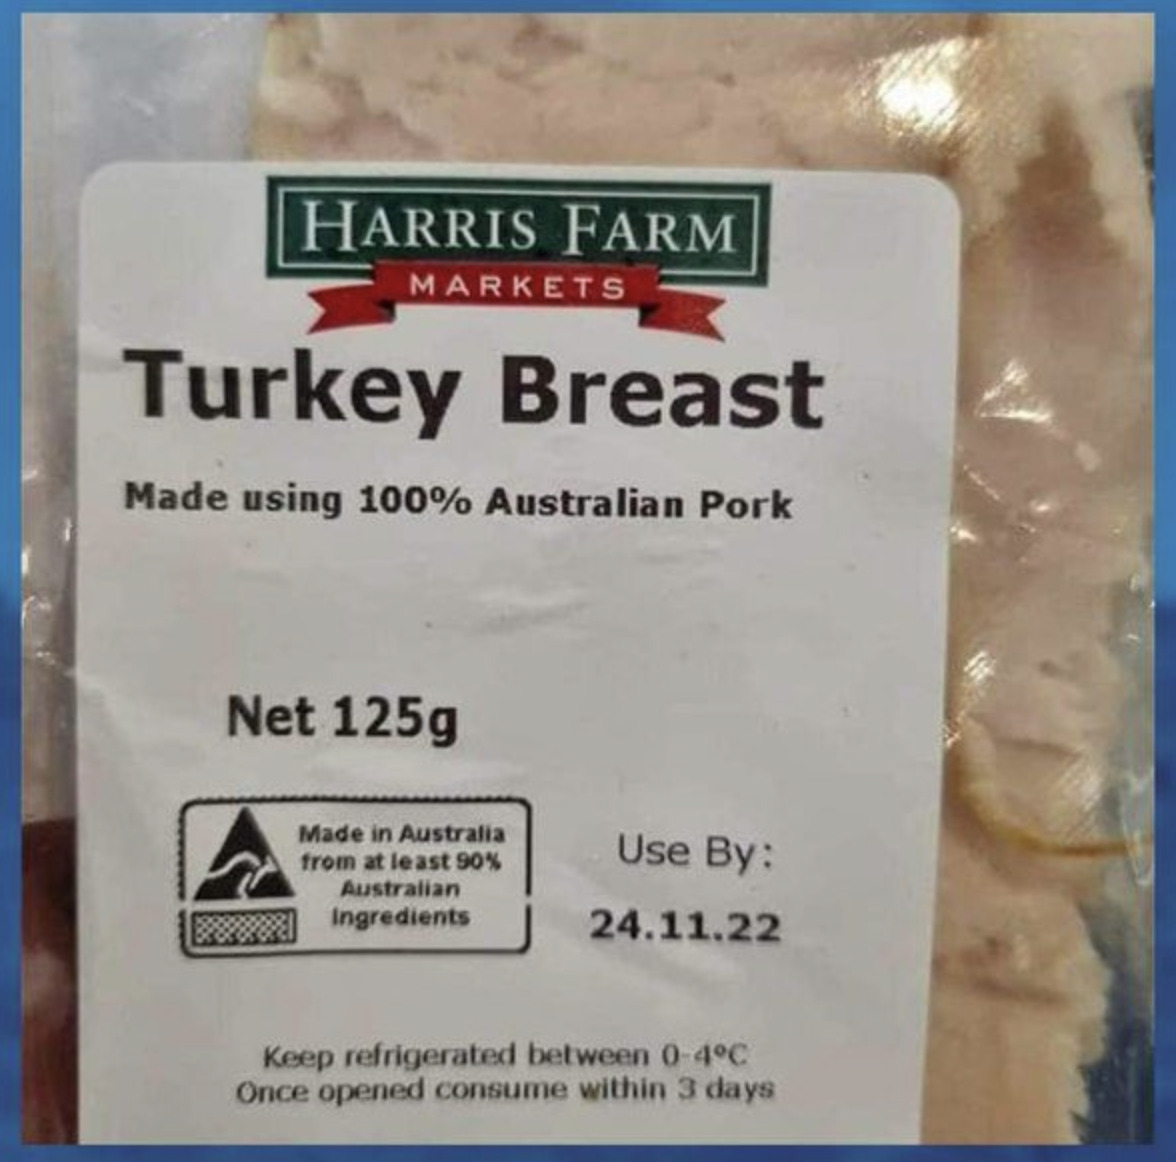 Hindi göğsündeki “%100 Domuz Eti” etiketi görseli İngiltere’den değil Avustralya’dandır – doğruluğu kontrol edilmiştir